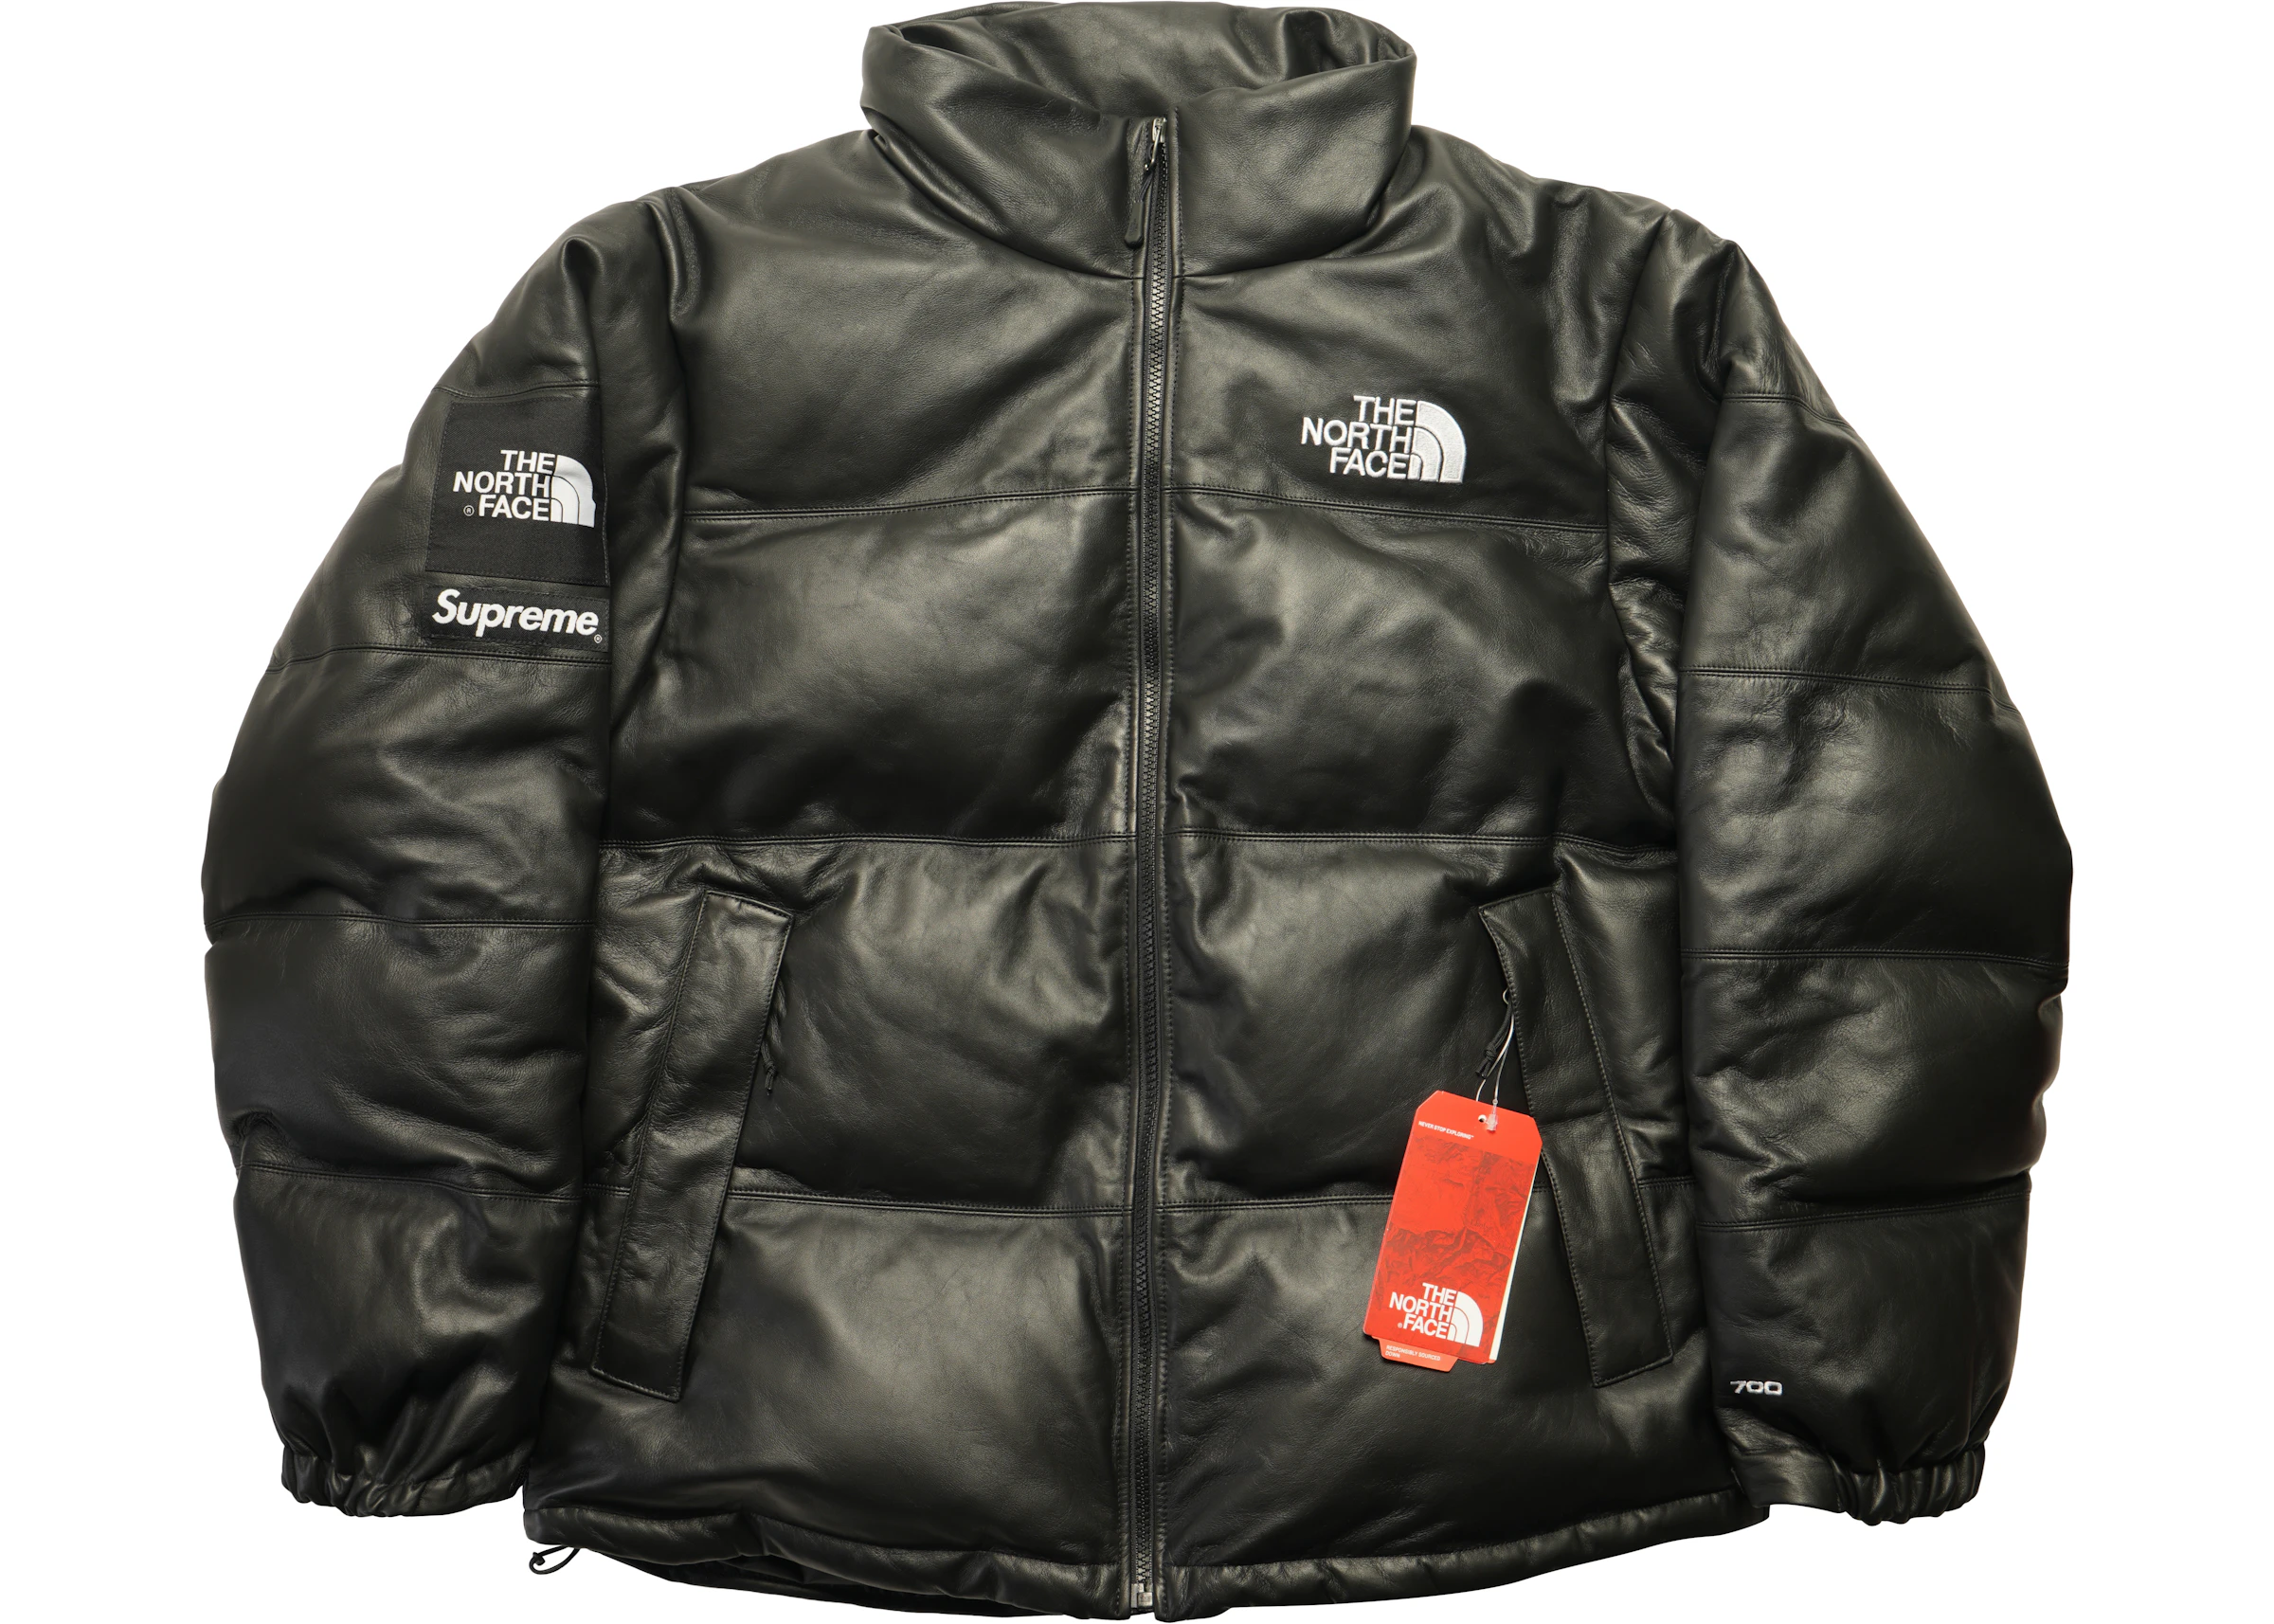 Gevoelig voor Geplooid Dag Supreme The North Face Leather Nuptse Jacket Black - FW17 - US